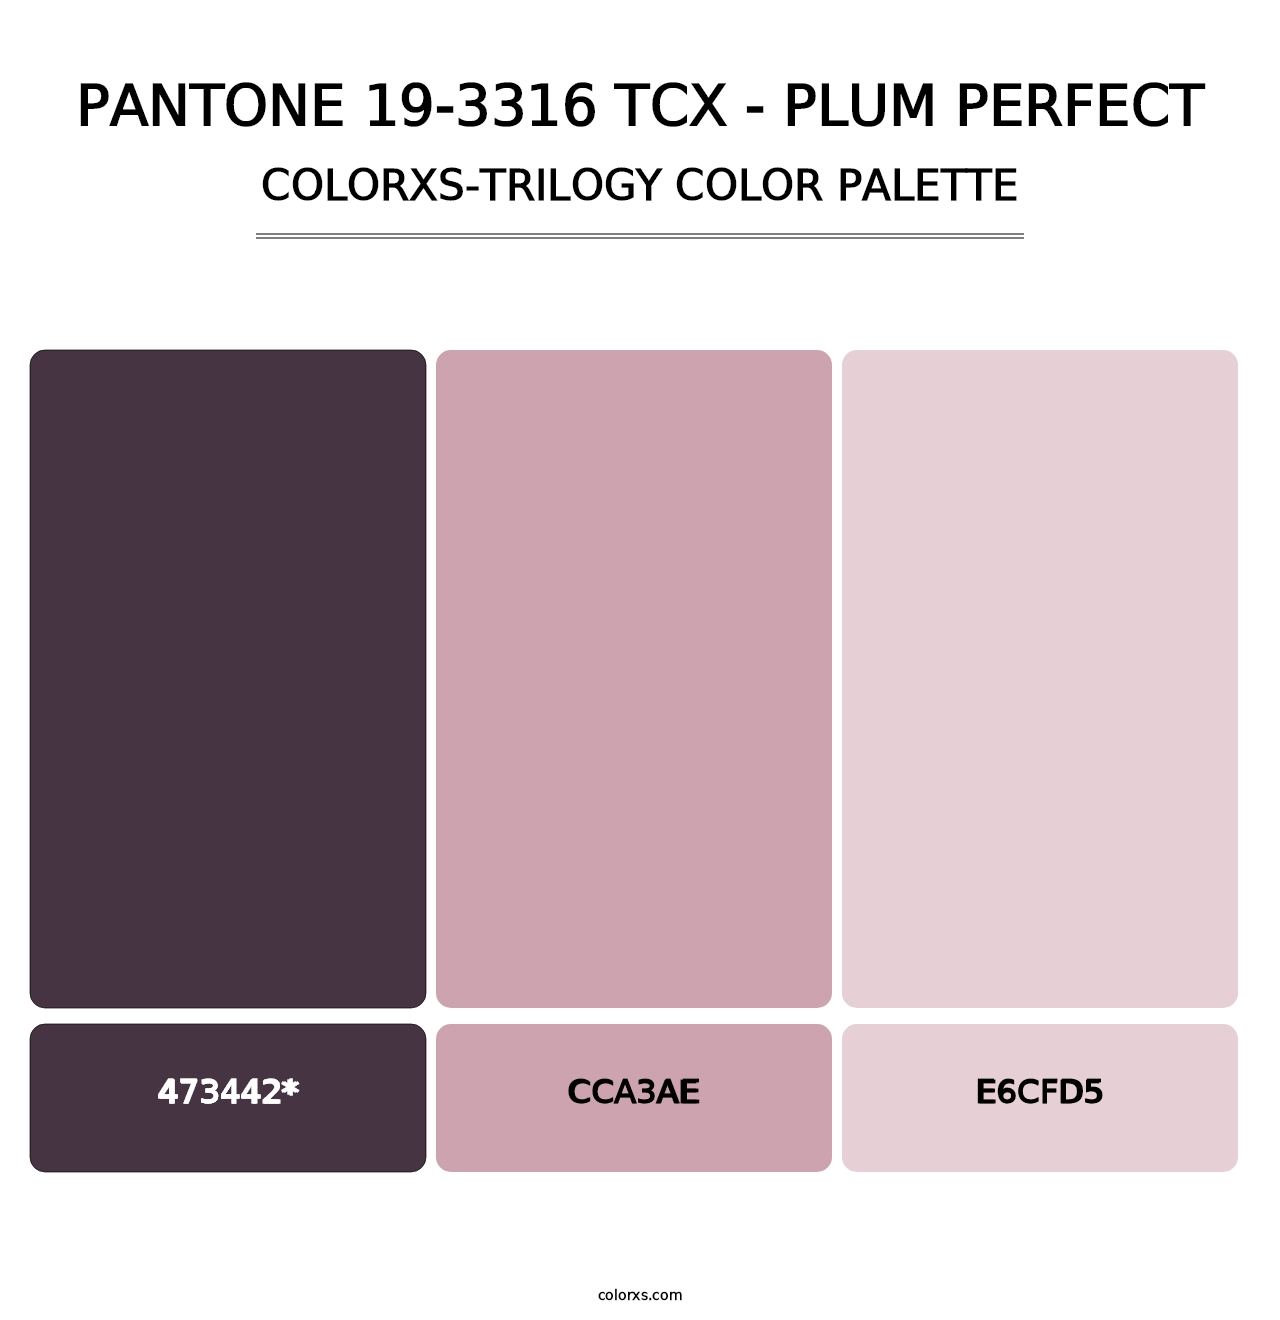 PANTONE 19-3316 TCX - Plum Perfect - Colorxs Trilogy Palette